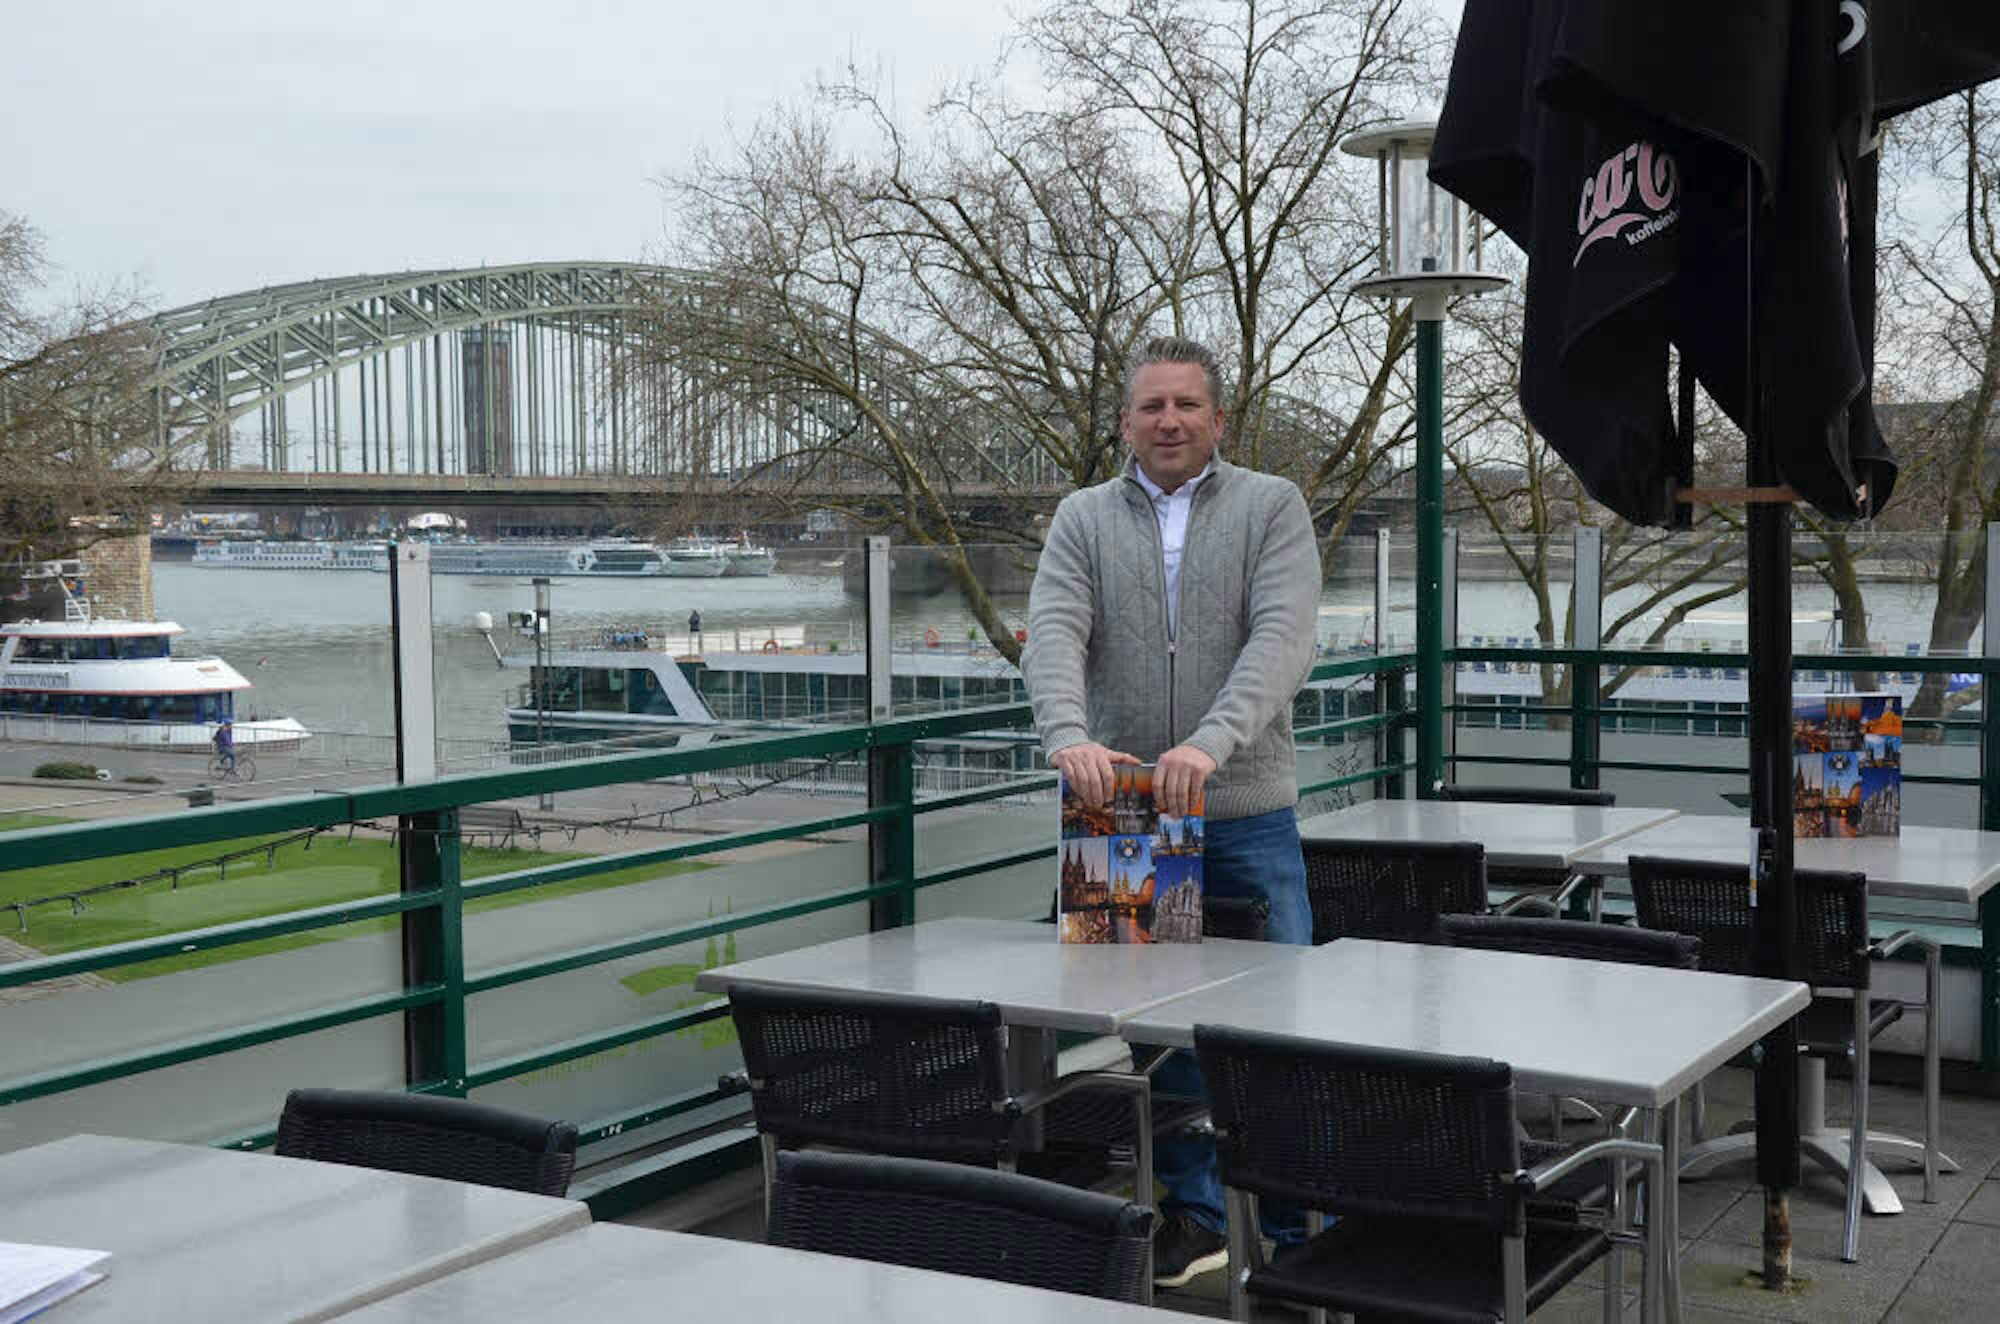 Inhaber Frank Martin ist besonders stolz auf die Terrasse, von der aus man einen wunderbaren Blick auf den Rhein genießt.